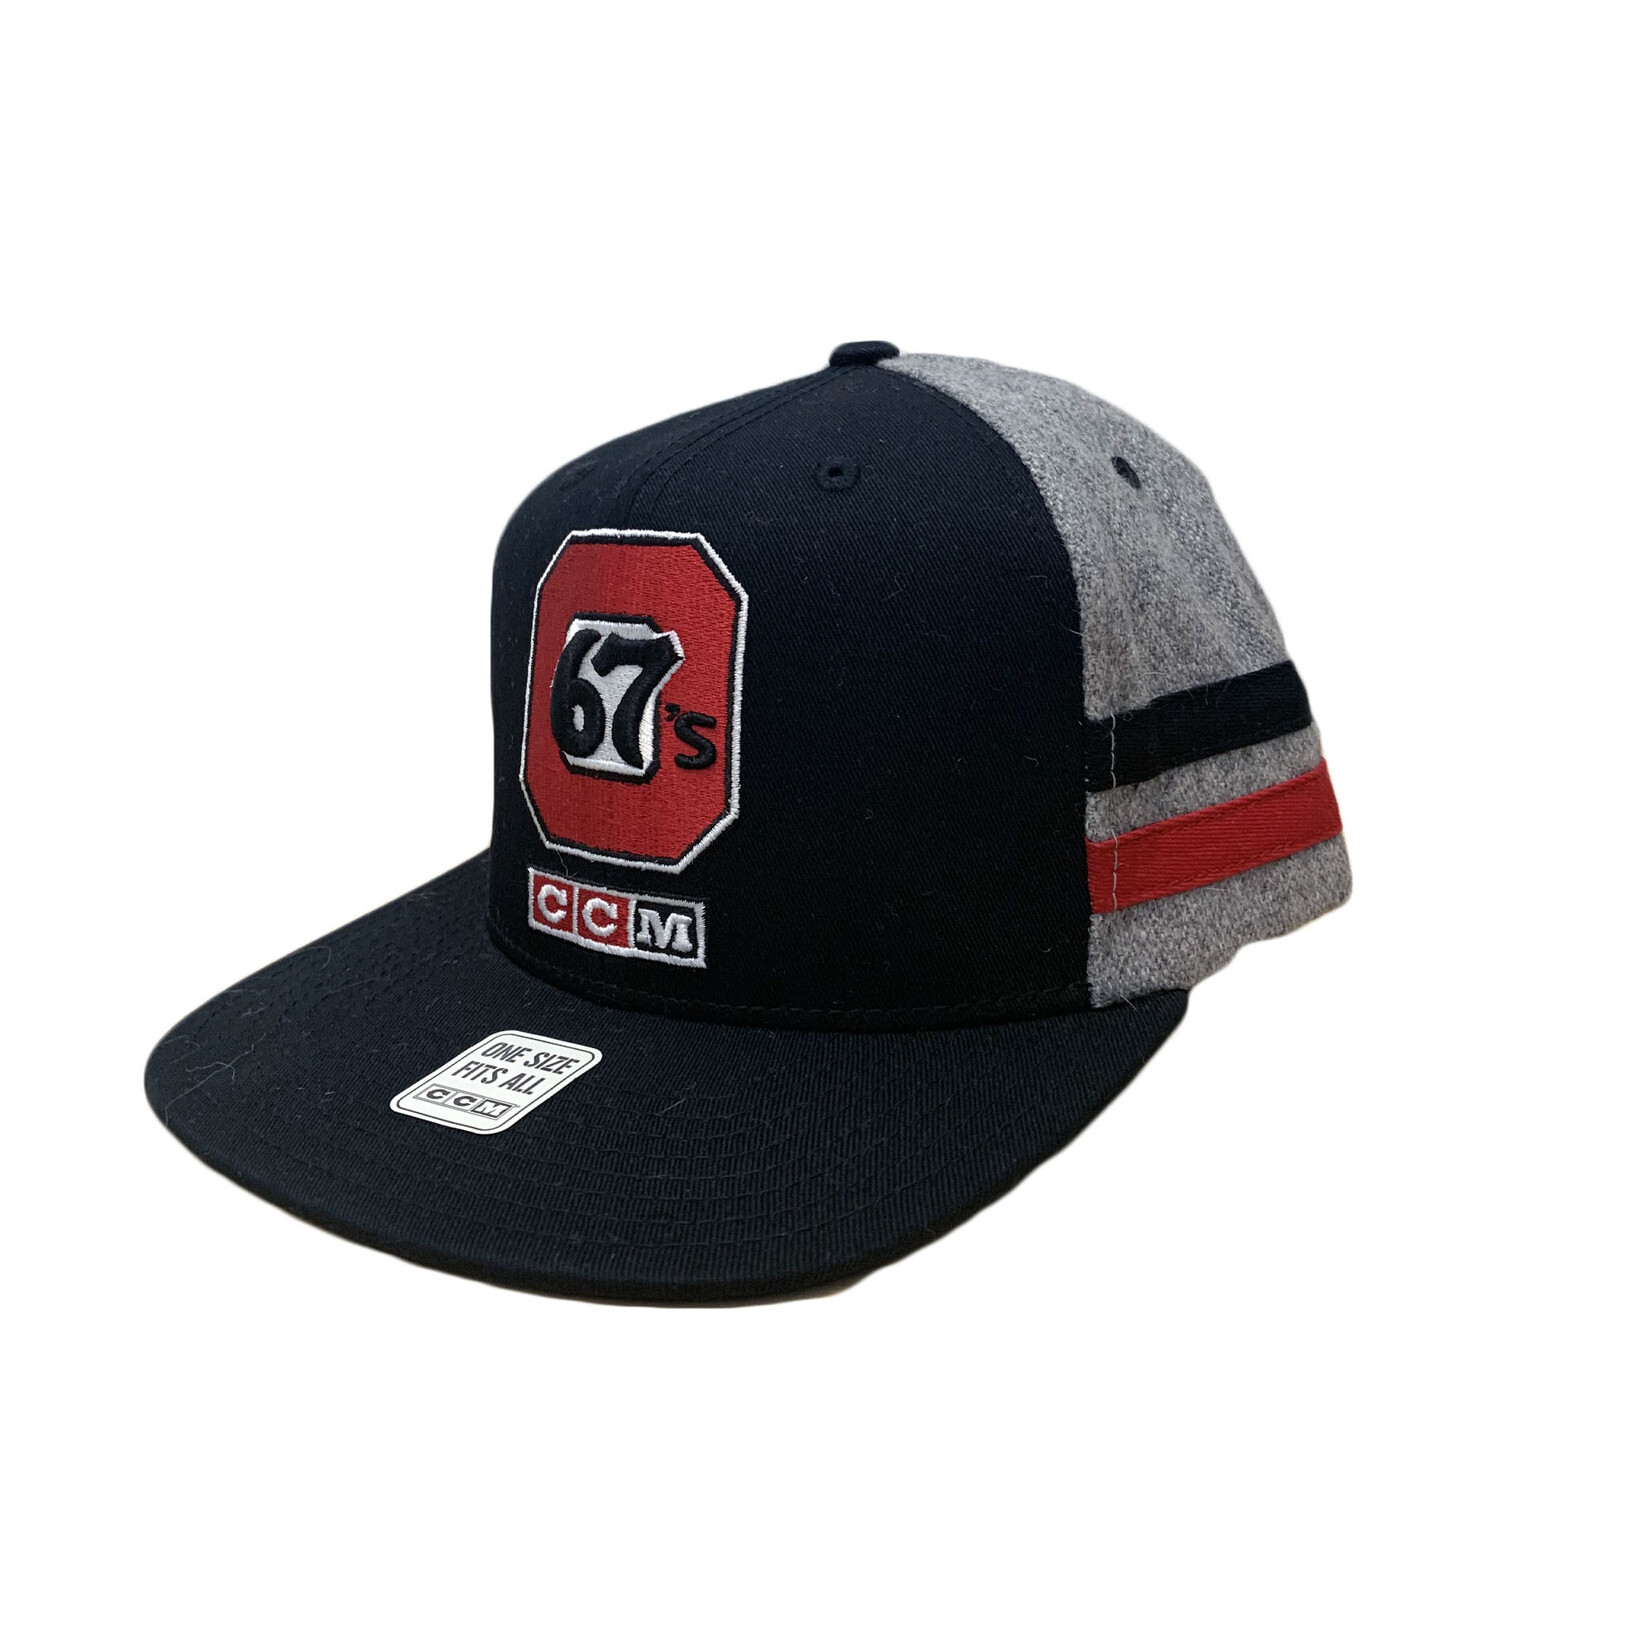 OTTAWA 67's 67's Stripe Hat